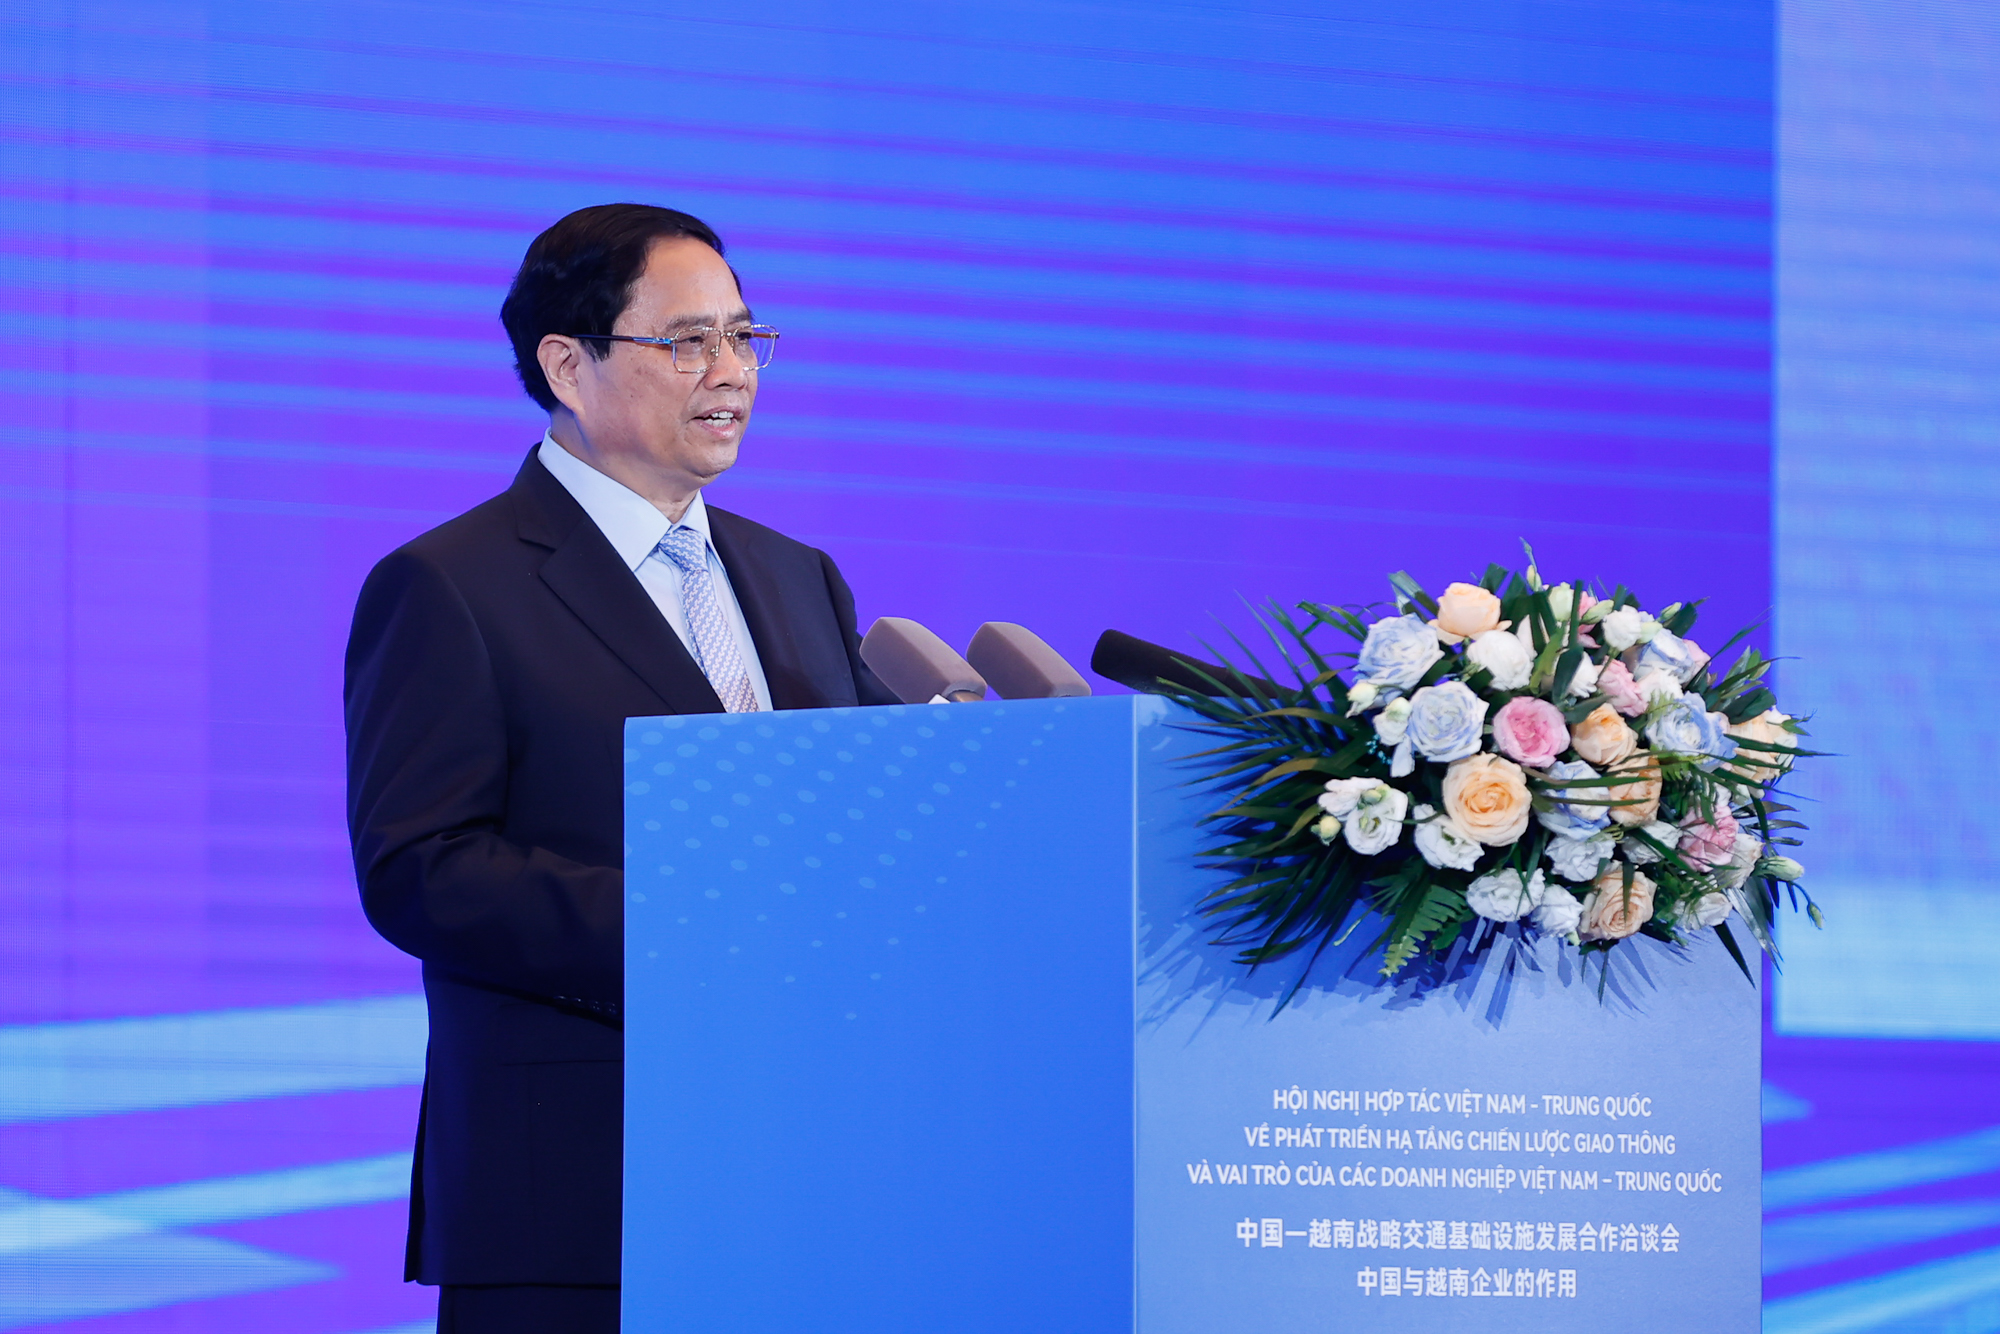 Thủ tướng Phạm Minh Chính nhấn mạnh, phát triển và kết nối hạ tầng chiến lược giao thông Việt Nam-Trung Quốc có ý nghĩa đặc biệt quan trọng, vừa tạo điều kiện thuận lợi để hai nước giao thương hàng hóa, giao lưu đi lại của người dân, vừa là cơ sở kết nối hai nước với khu vực và thế giới - Ảnh: VGP/Nhật Bắc